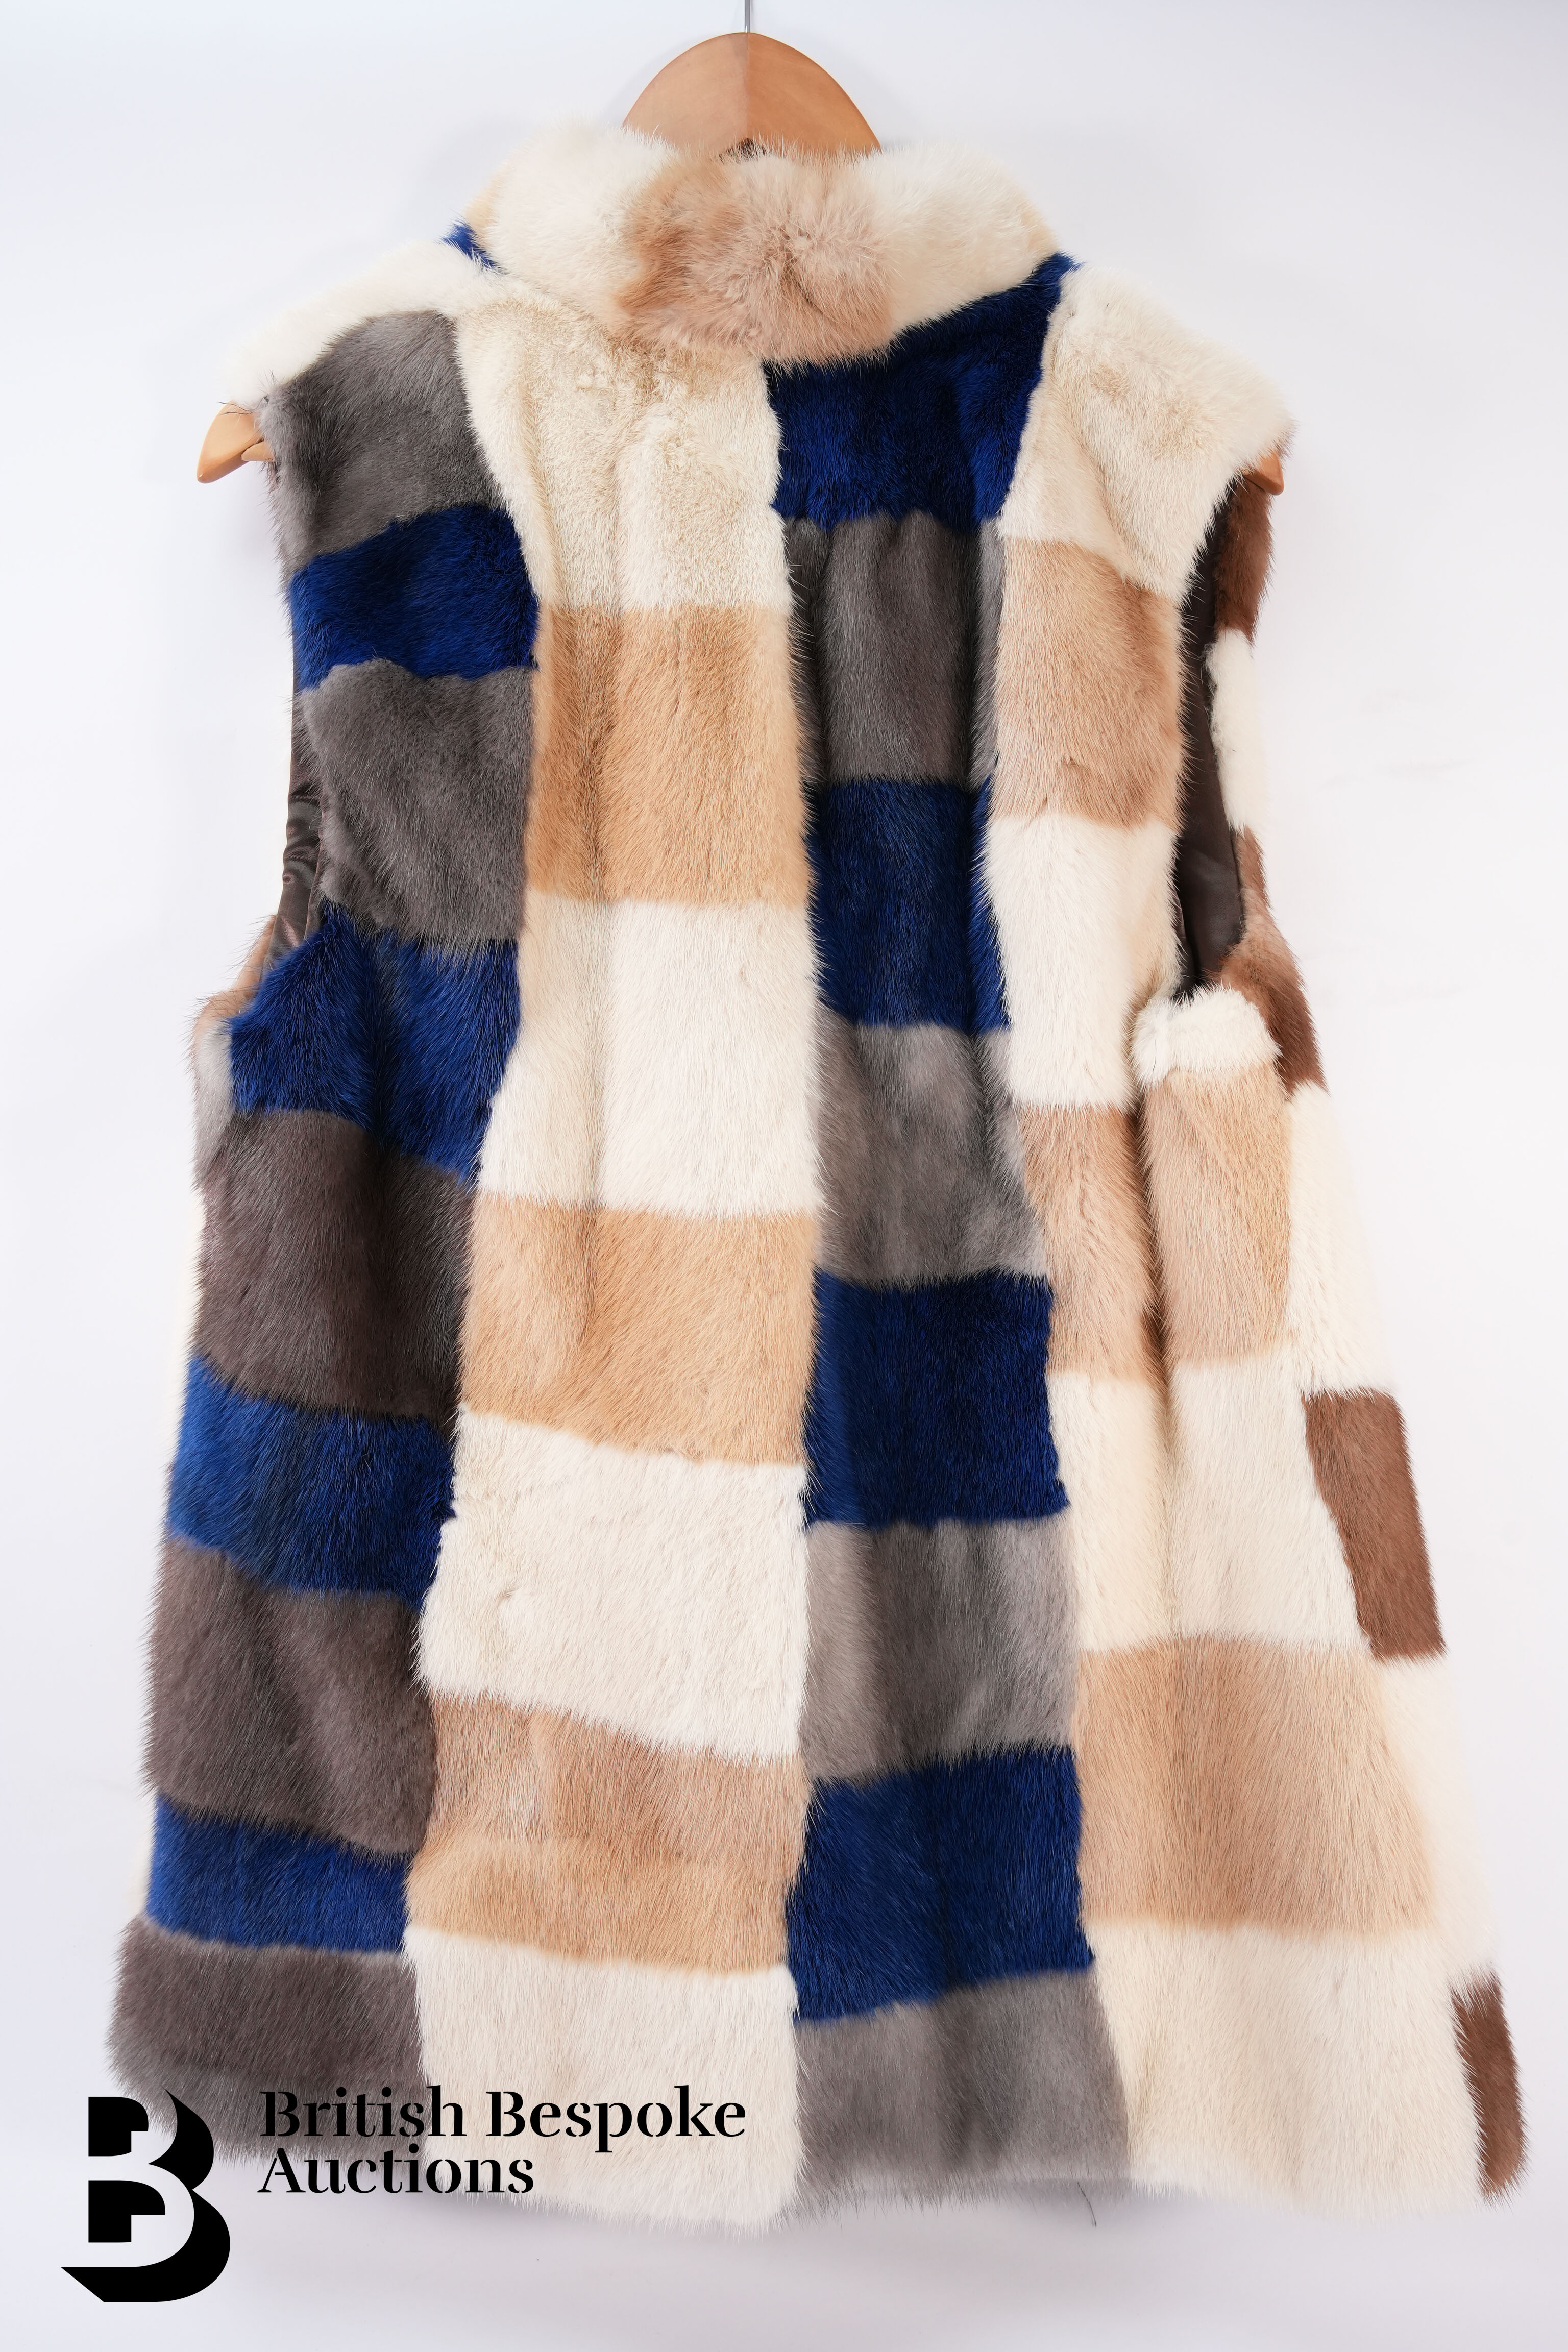 Coloured Mink Veste Vison, Two Mink Coats, and Crocodile Handbag - Image 4 of 10